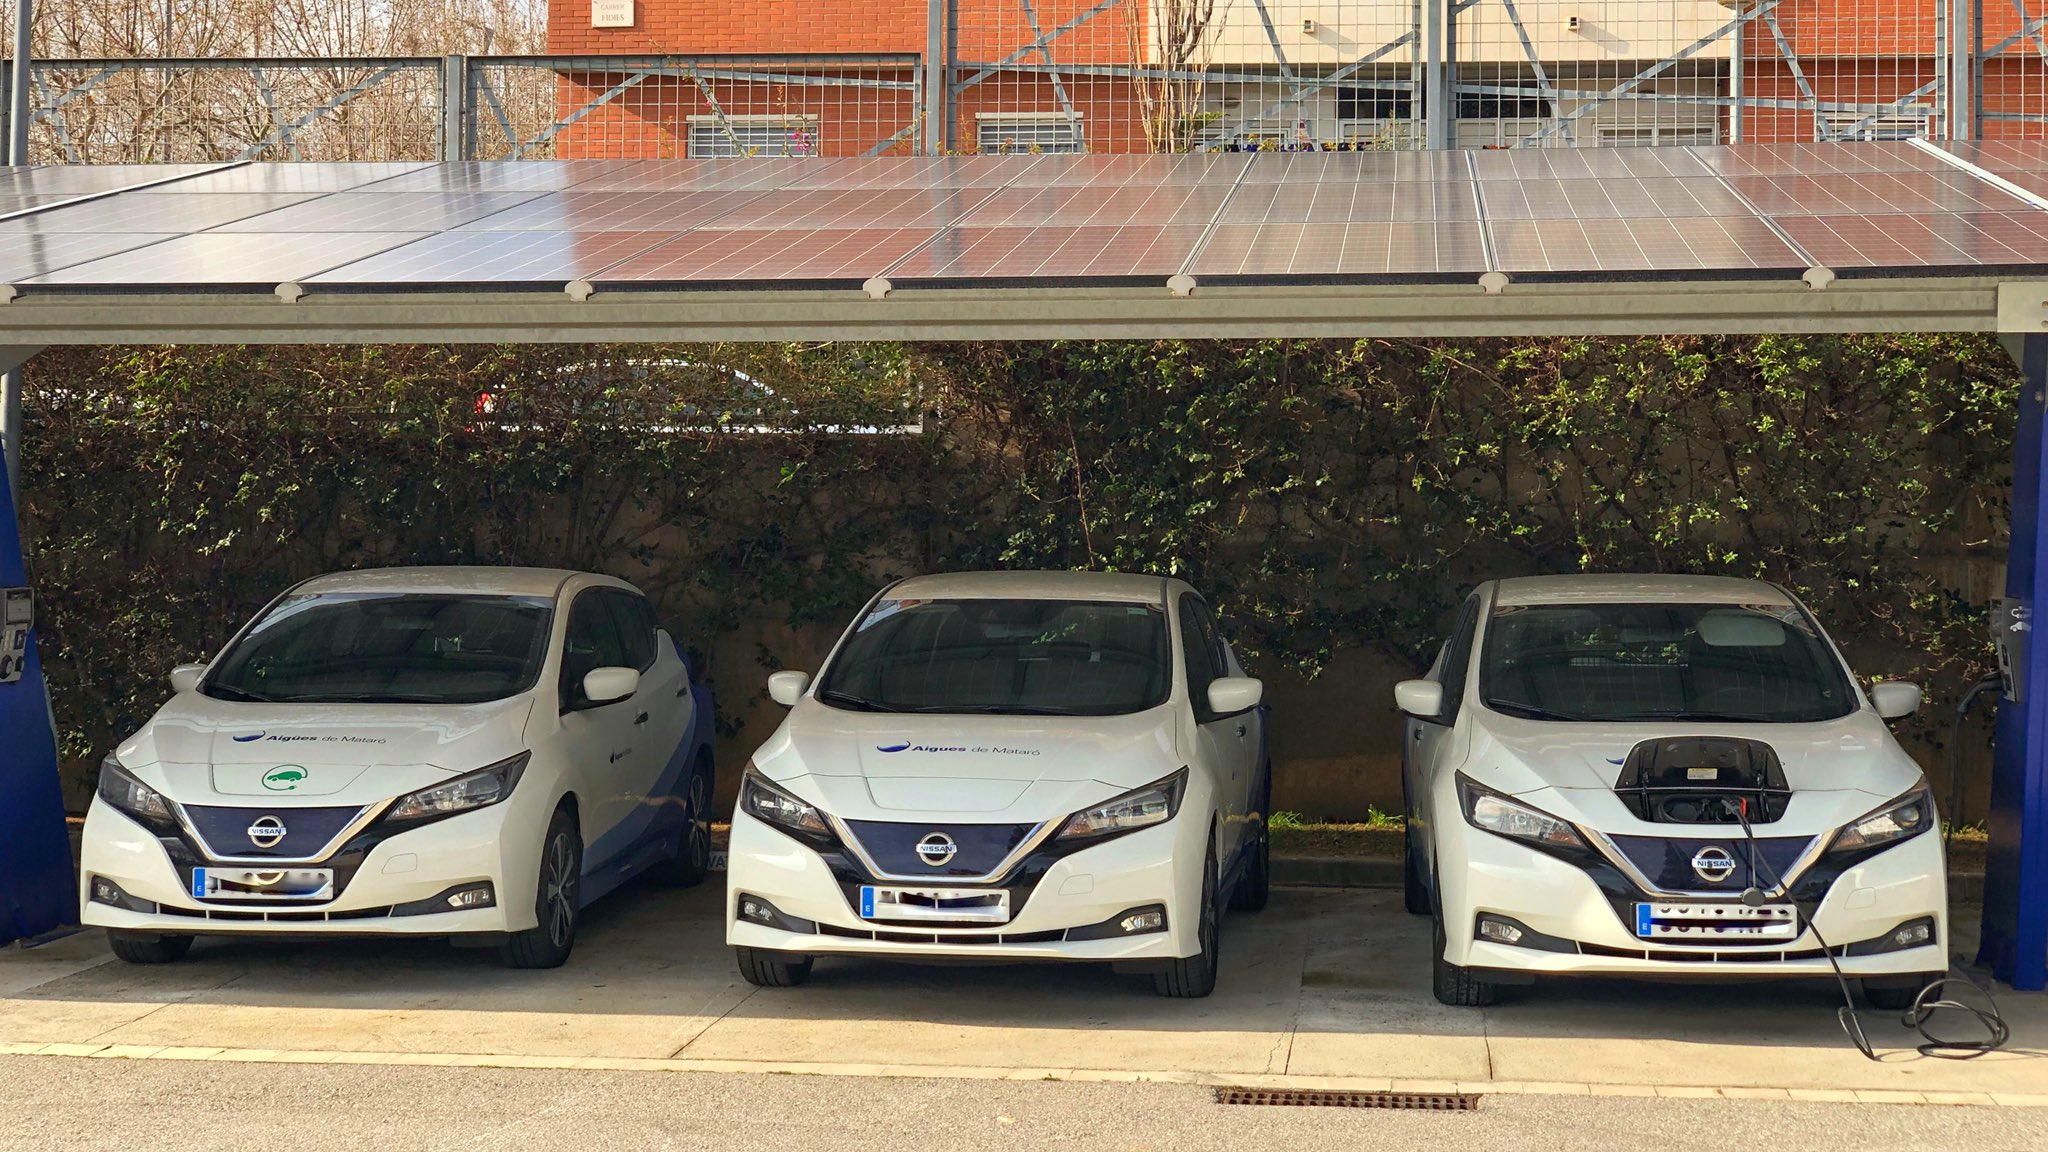 Tres vehicles elèctris de color blanc, d'Aigües de Mataró sota una coberta amb plaques fotovoltaiques per carregar-los